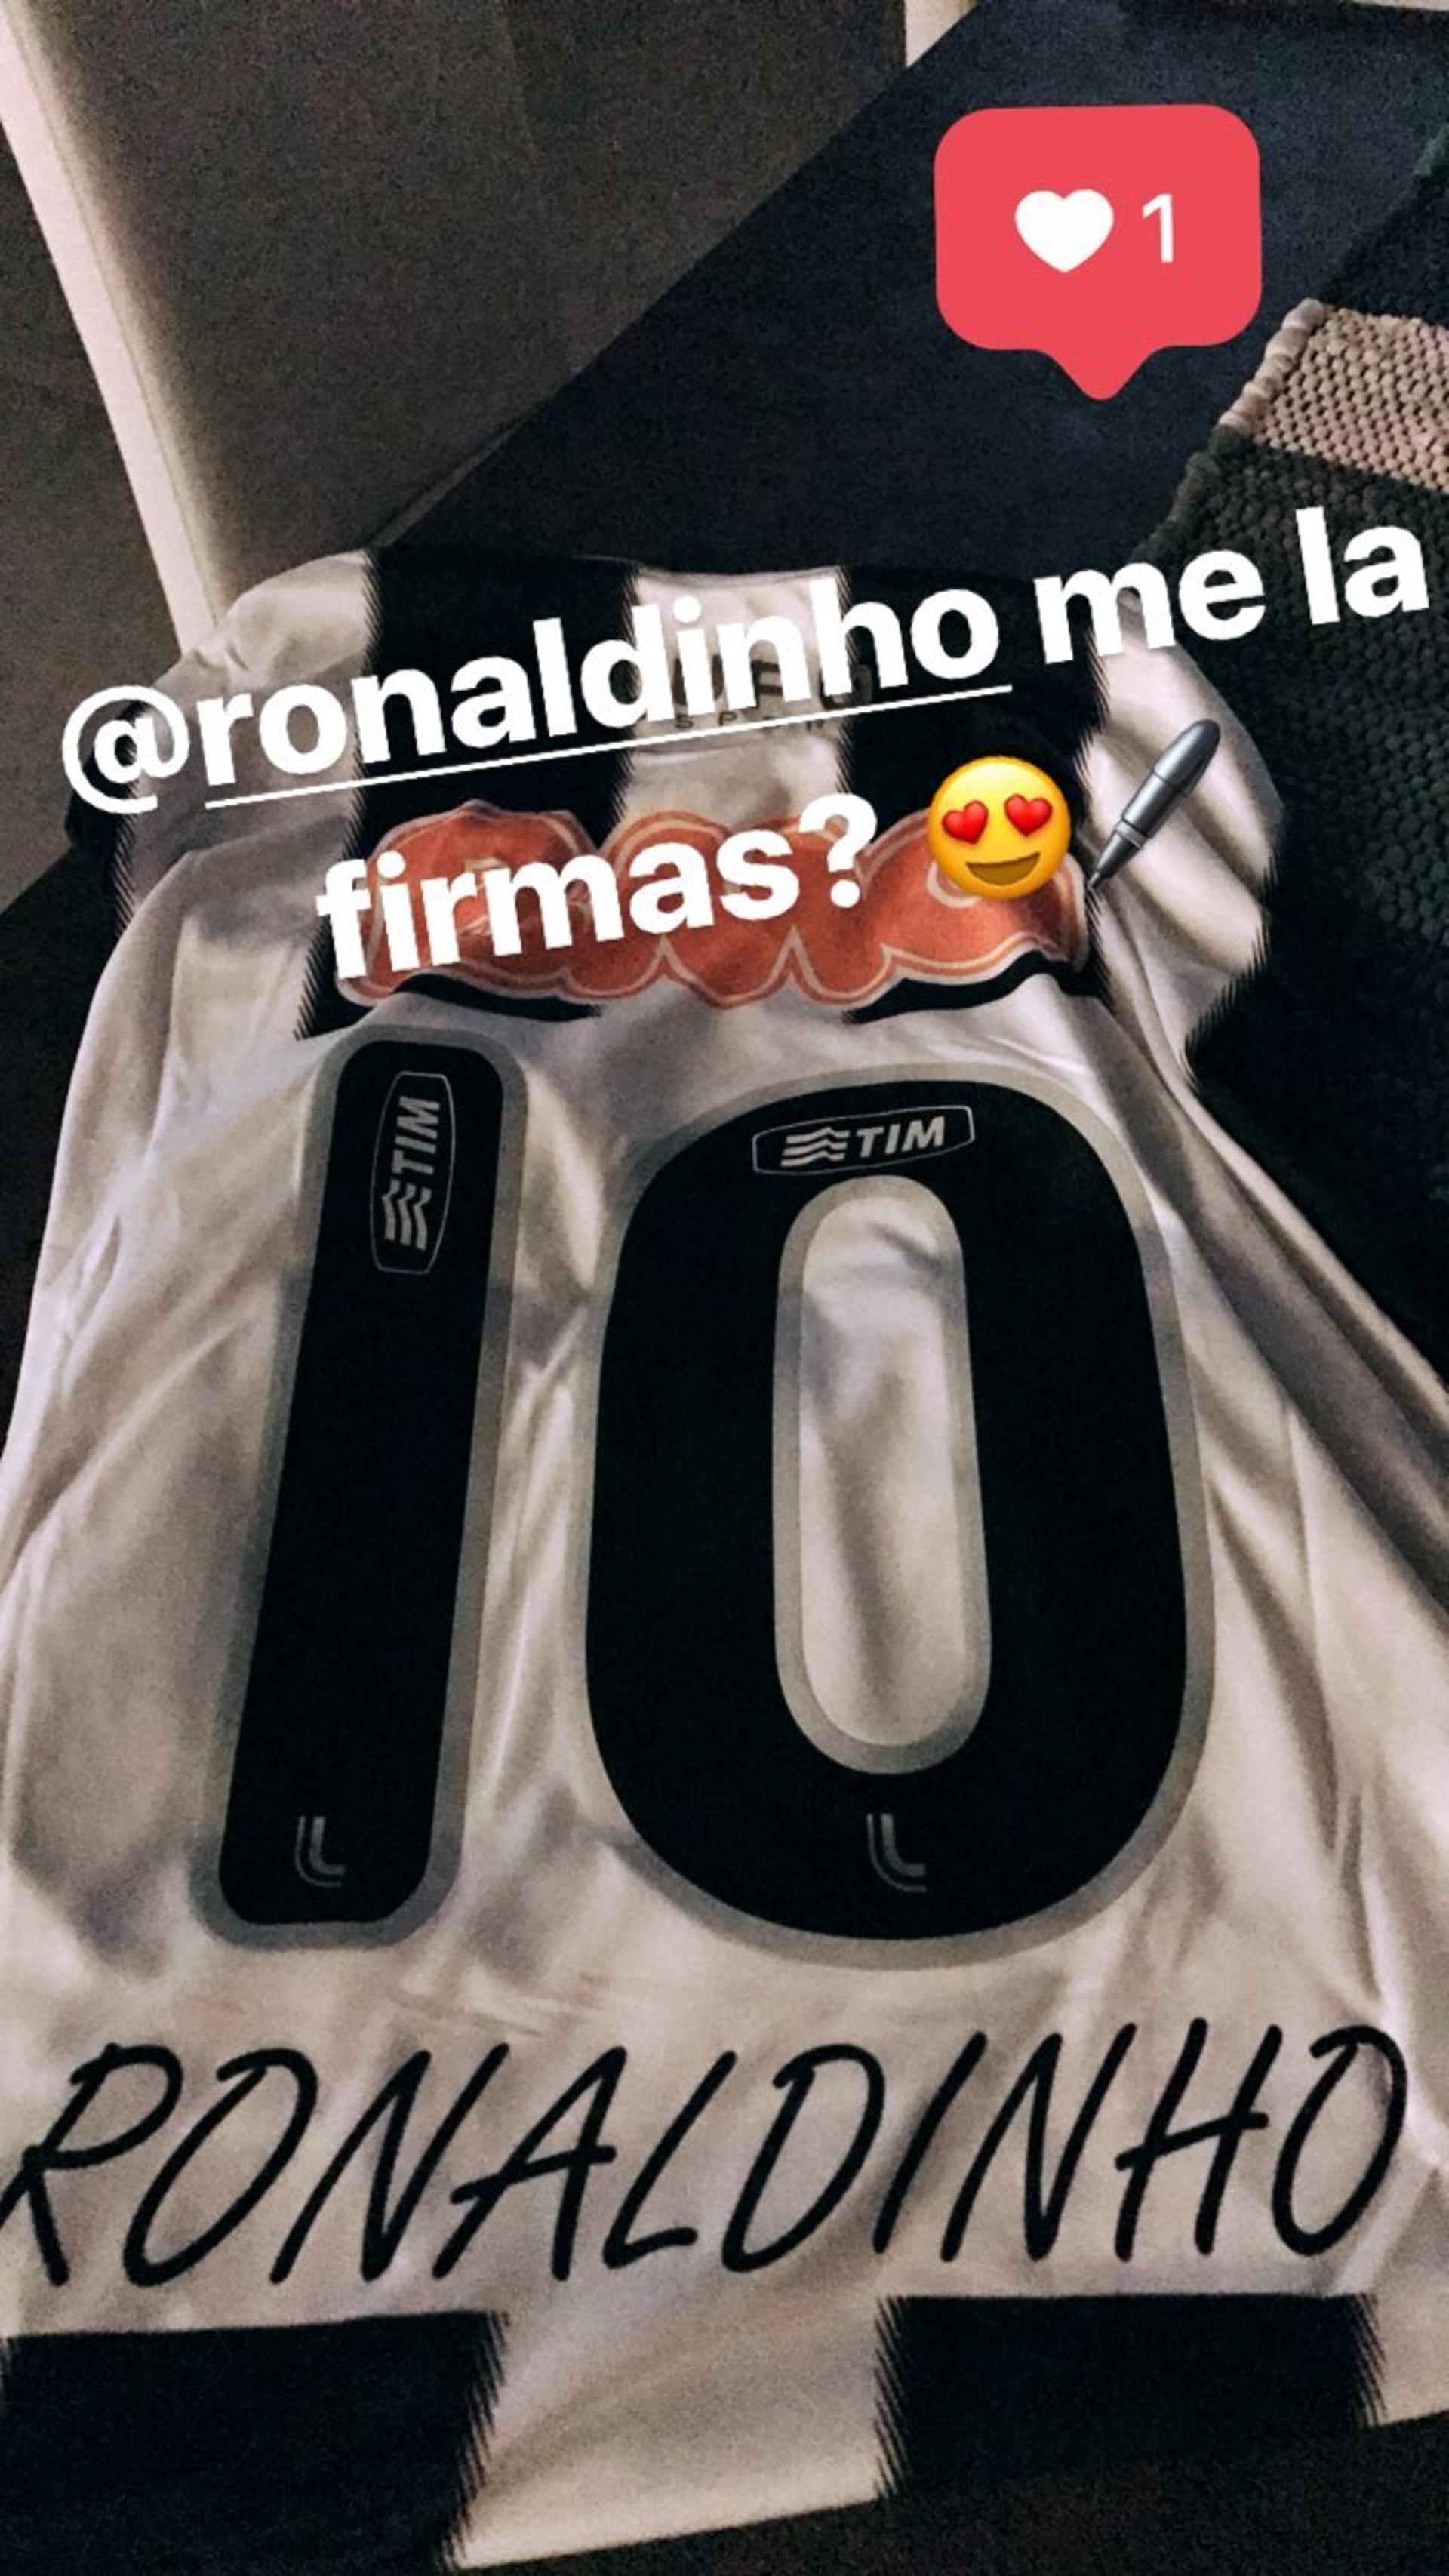 Dybala pede autógrafo de Ronaldinho Gaúcho em camisa do Atlético-MG